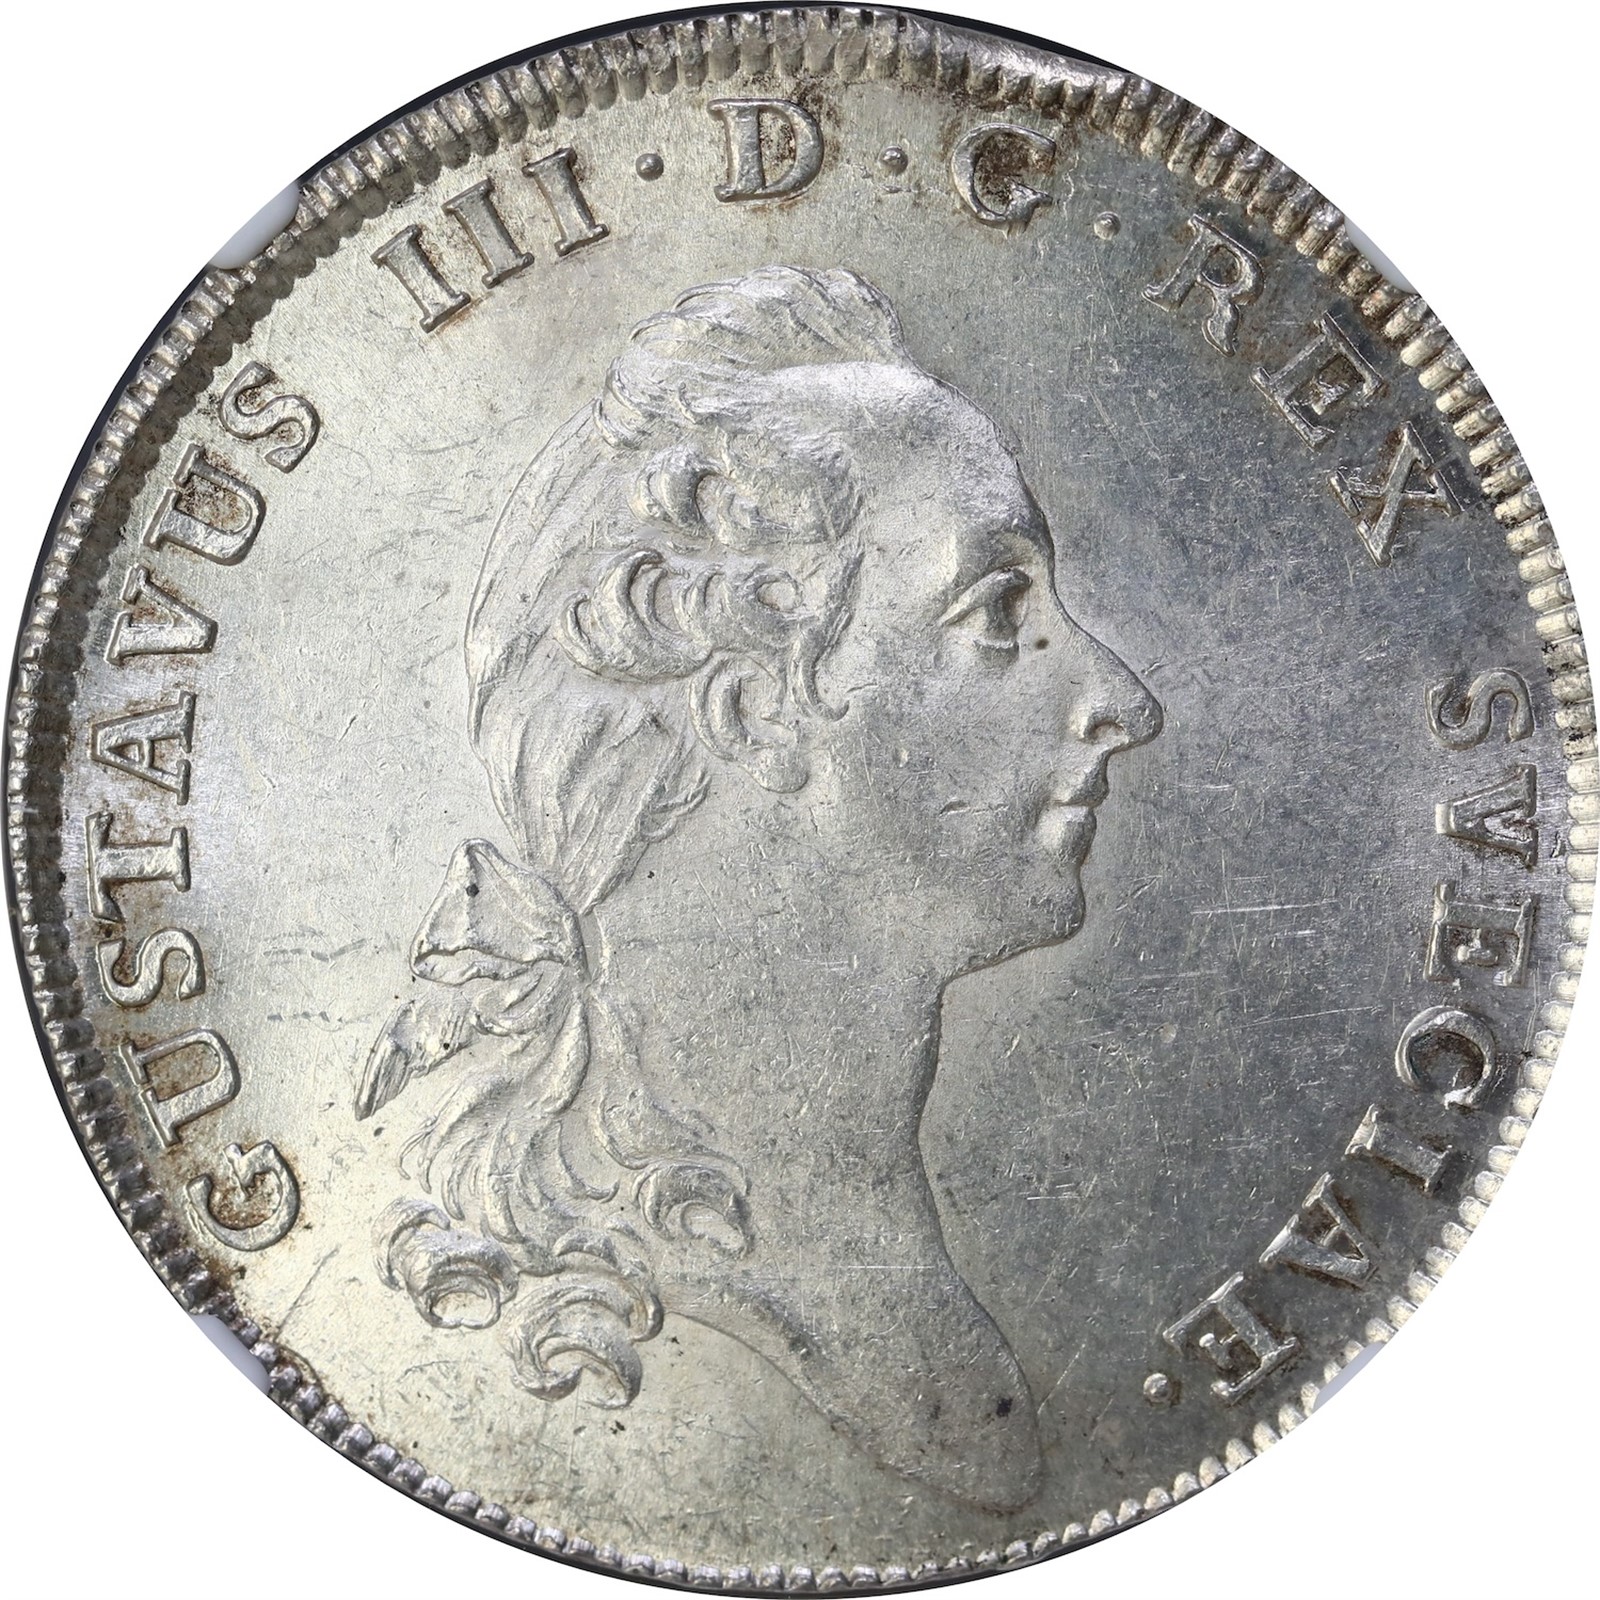 SWEDEN. Gustav III. 1 Rigsdaler 1780-OL NGC MS61.